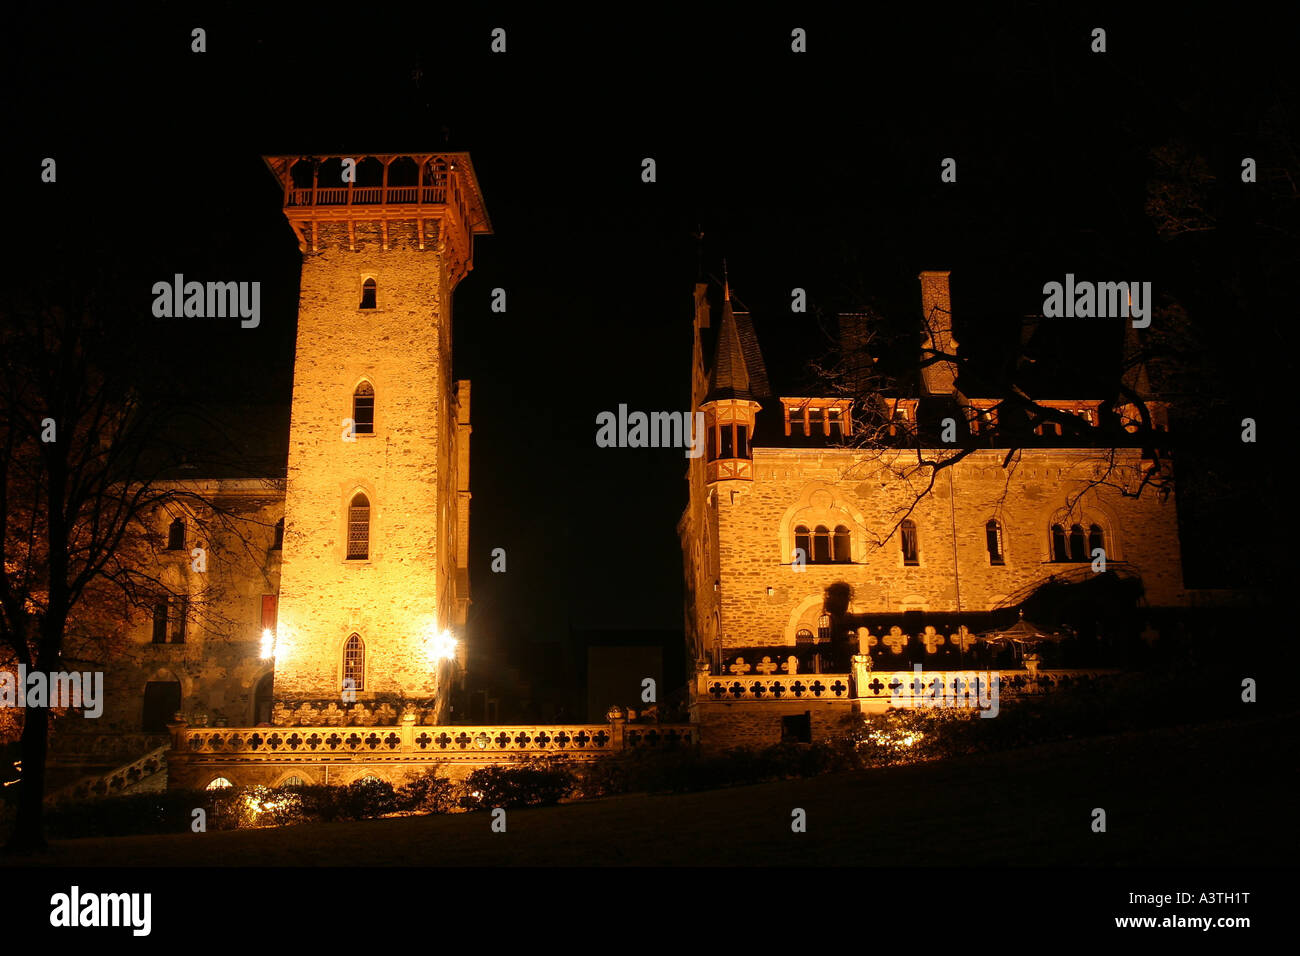 La Liebig Palais ou château de nuit, Berlin, Allemagne, Rhénanie-Palatinat Banque D'Images